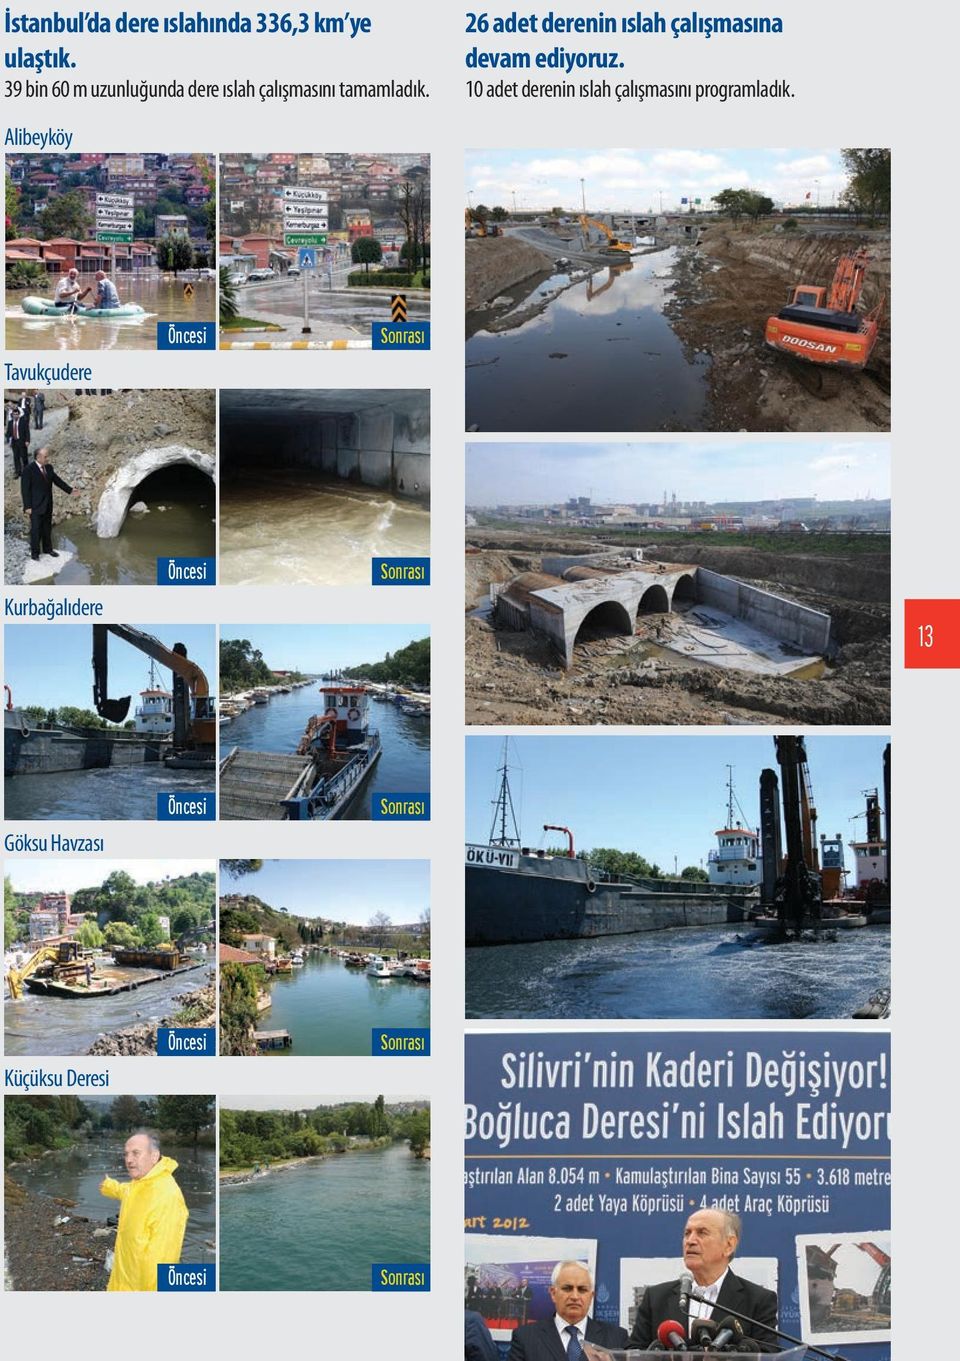 Alibeyköy 26 adet derenin ıslah çalışmasına devam ediyoruz.